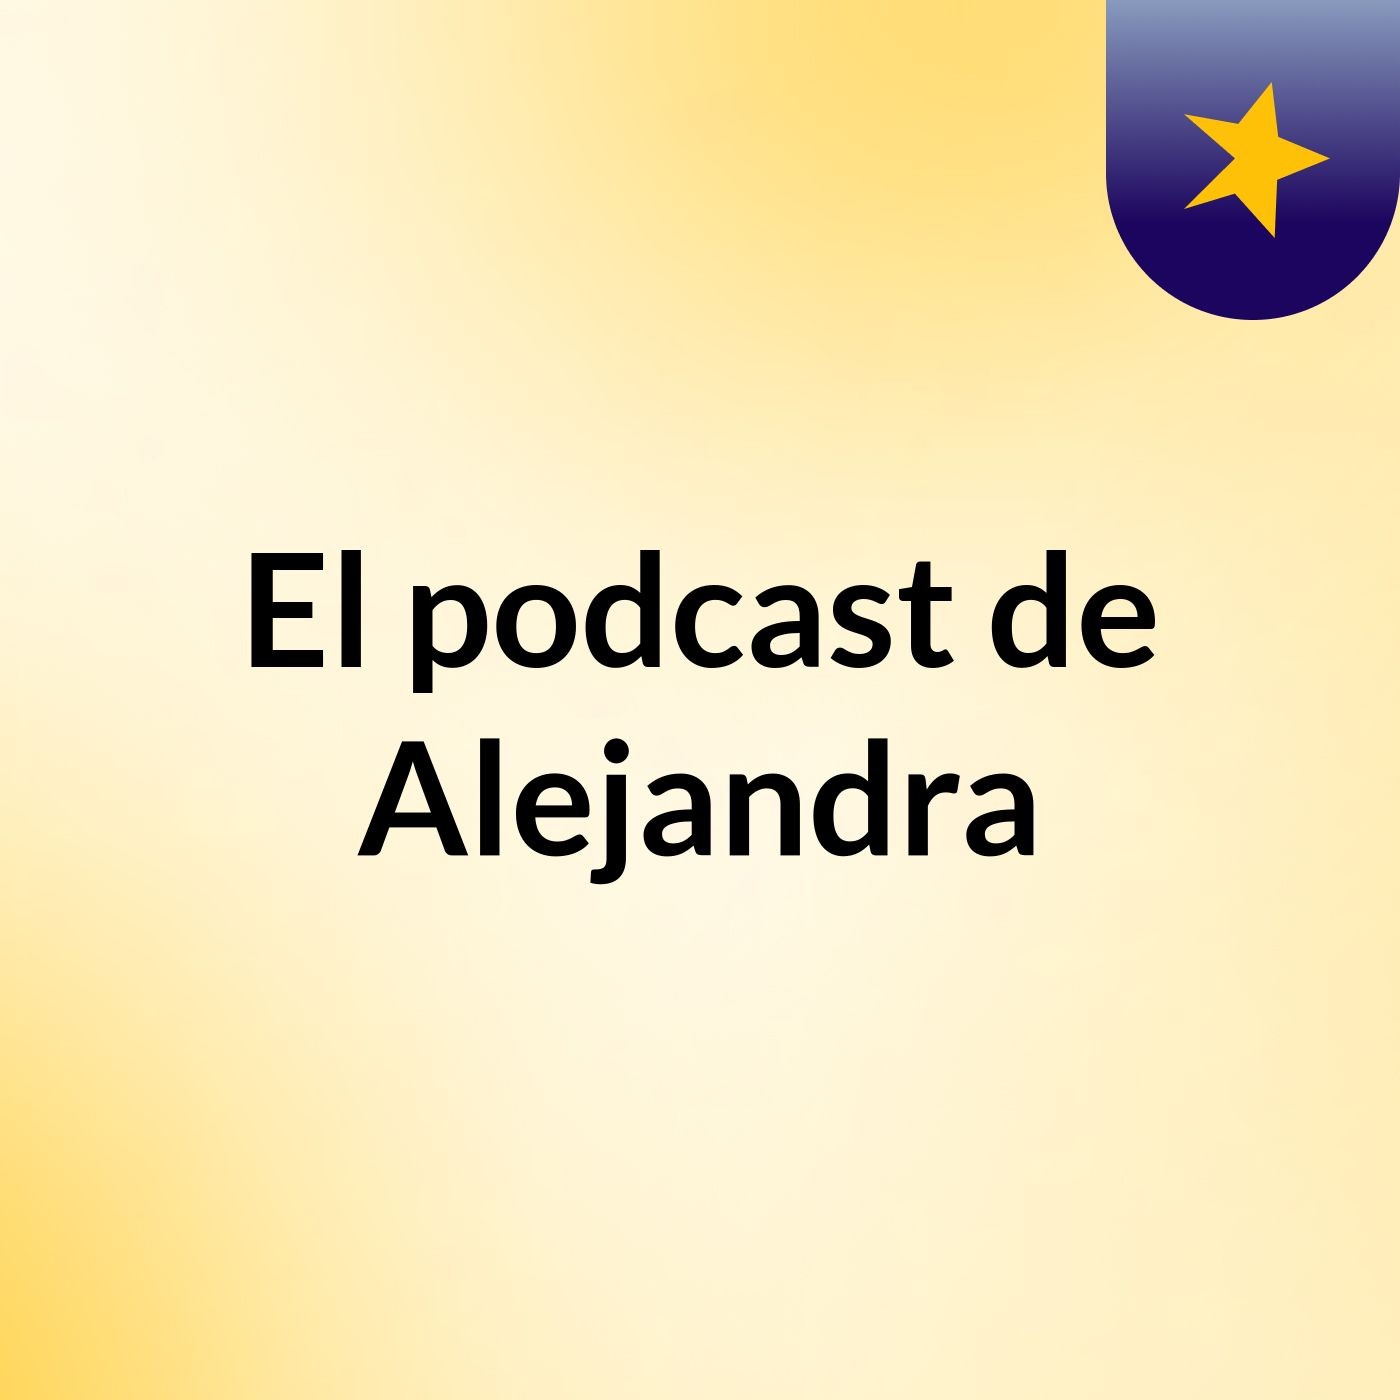 El podcast de Alejandra